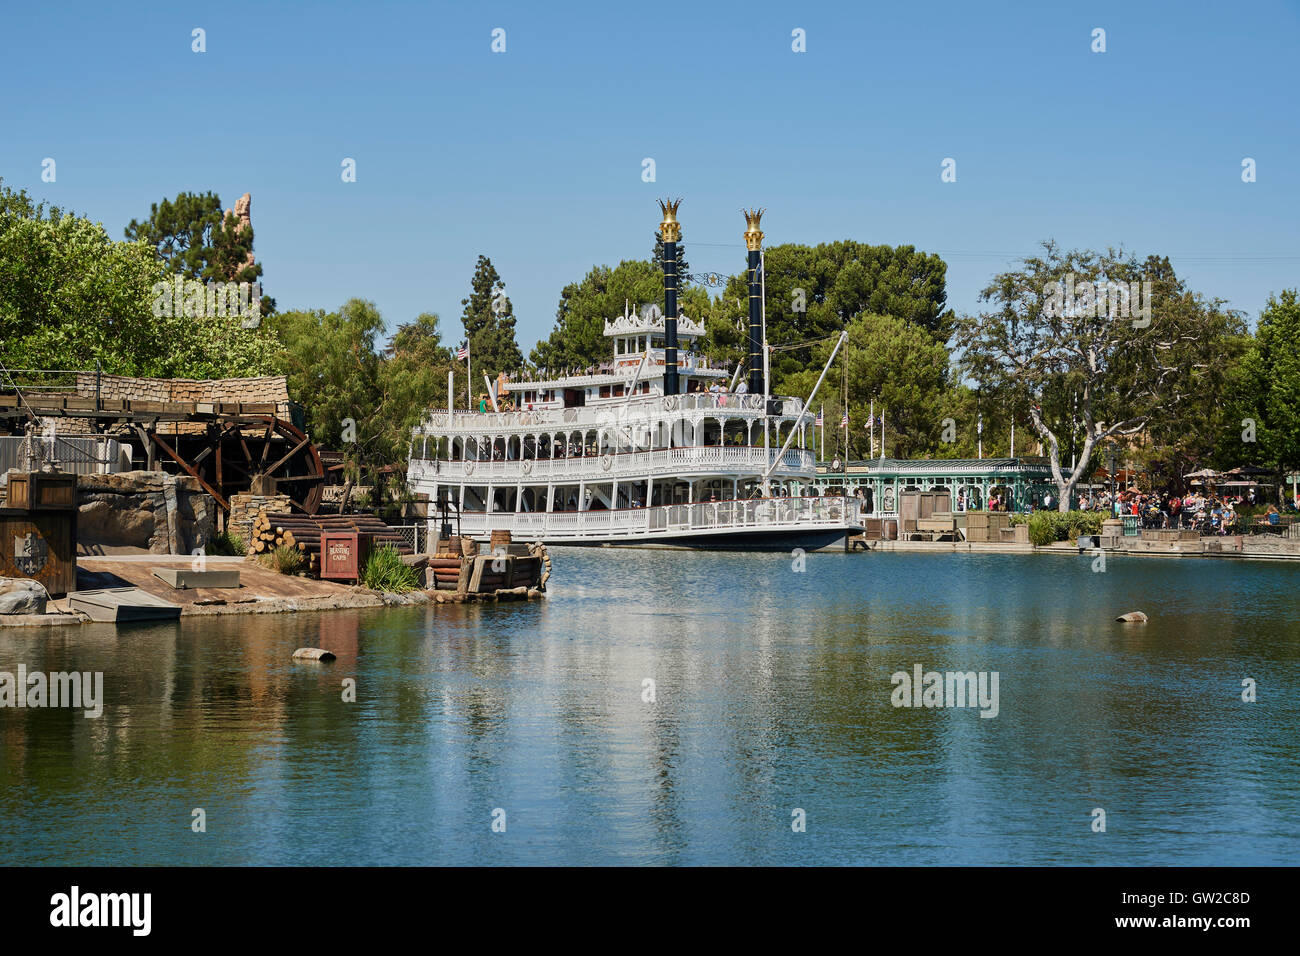 Mark Twain Riverboat ist eine Attraktion, befindet sich im Freizeitpark Disneyland in Anaheim, Kalifornien. Stockfoto